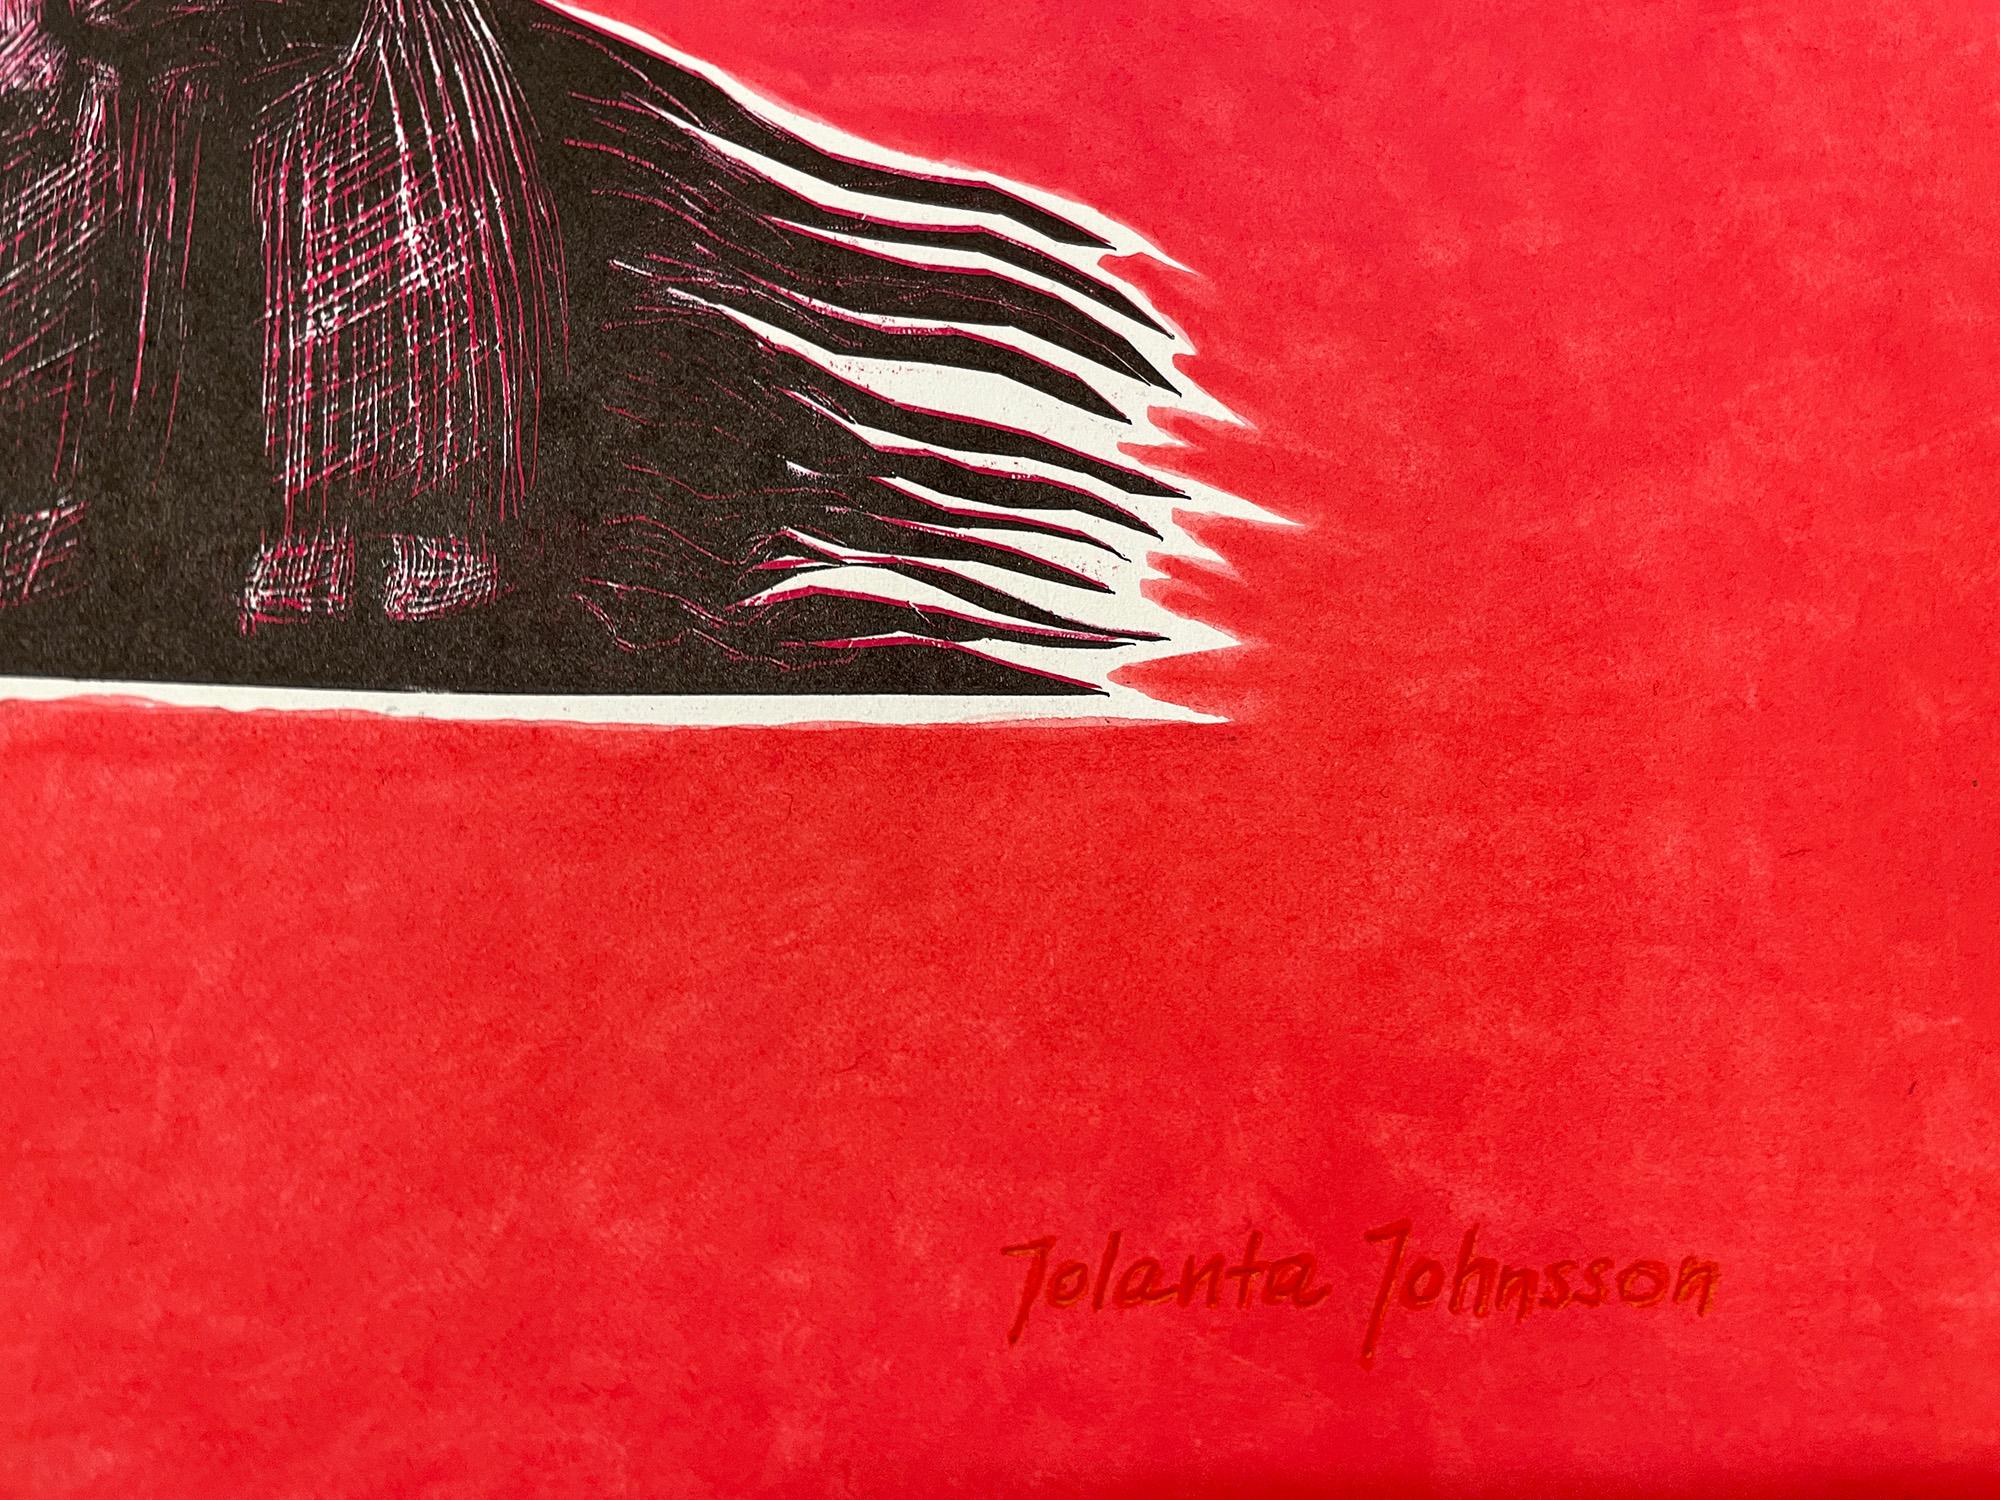 Desire en rouge - Art de Jolanta Johnsson